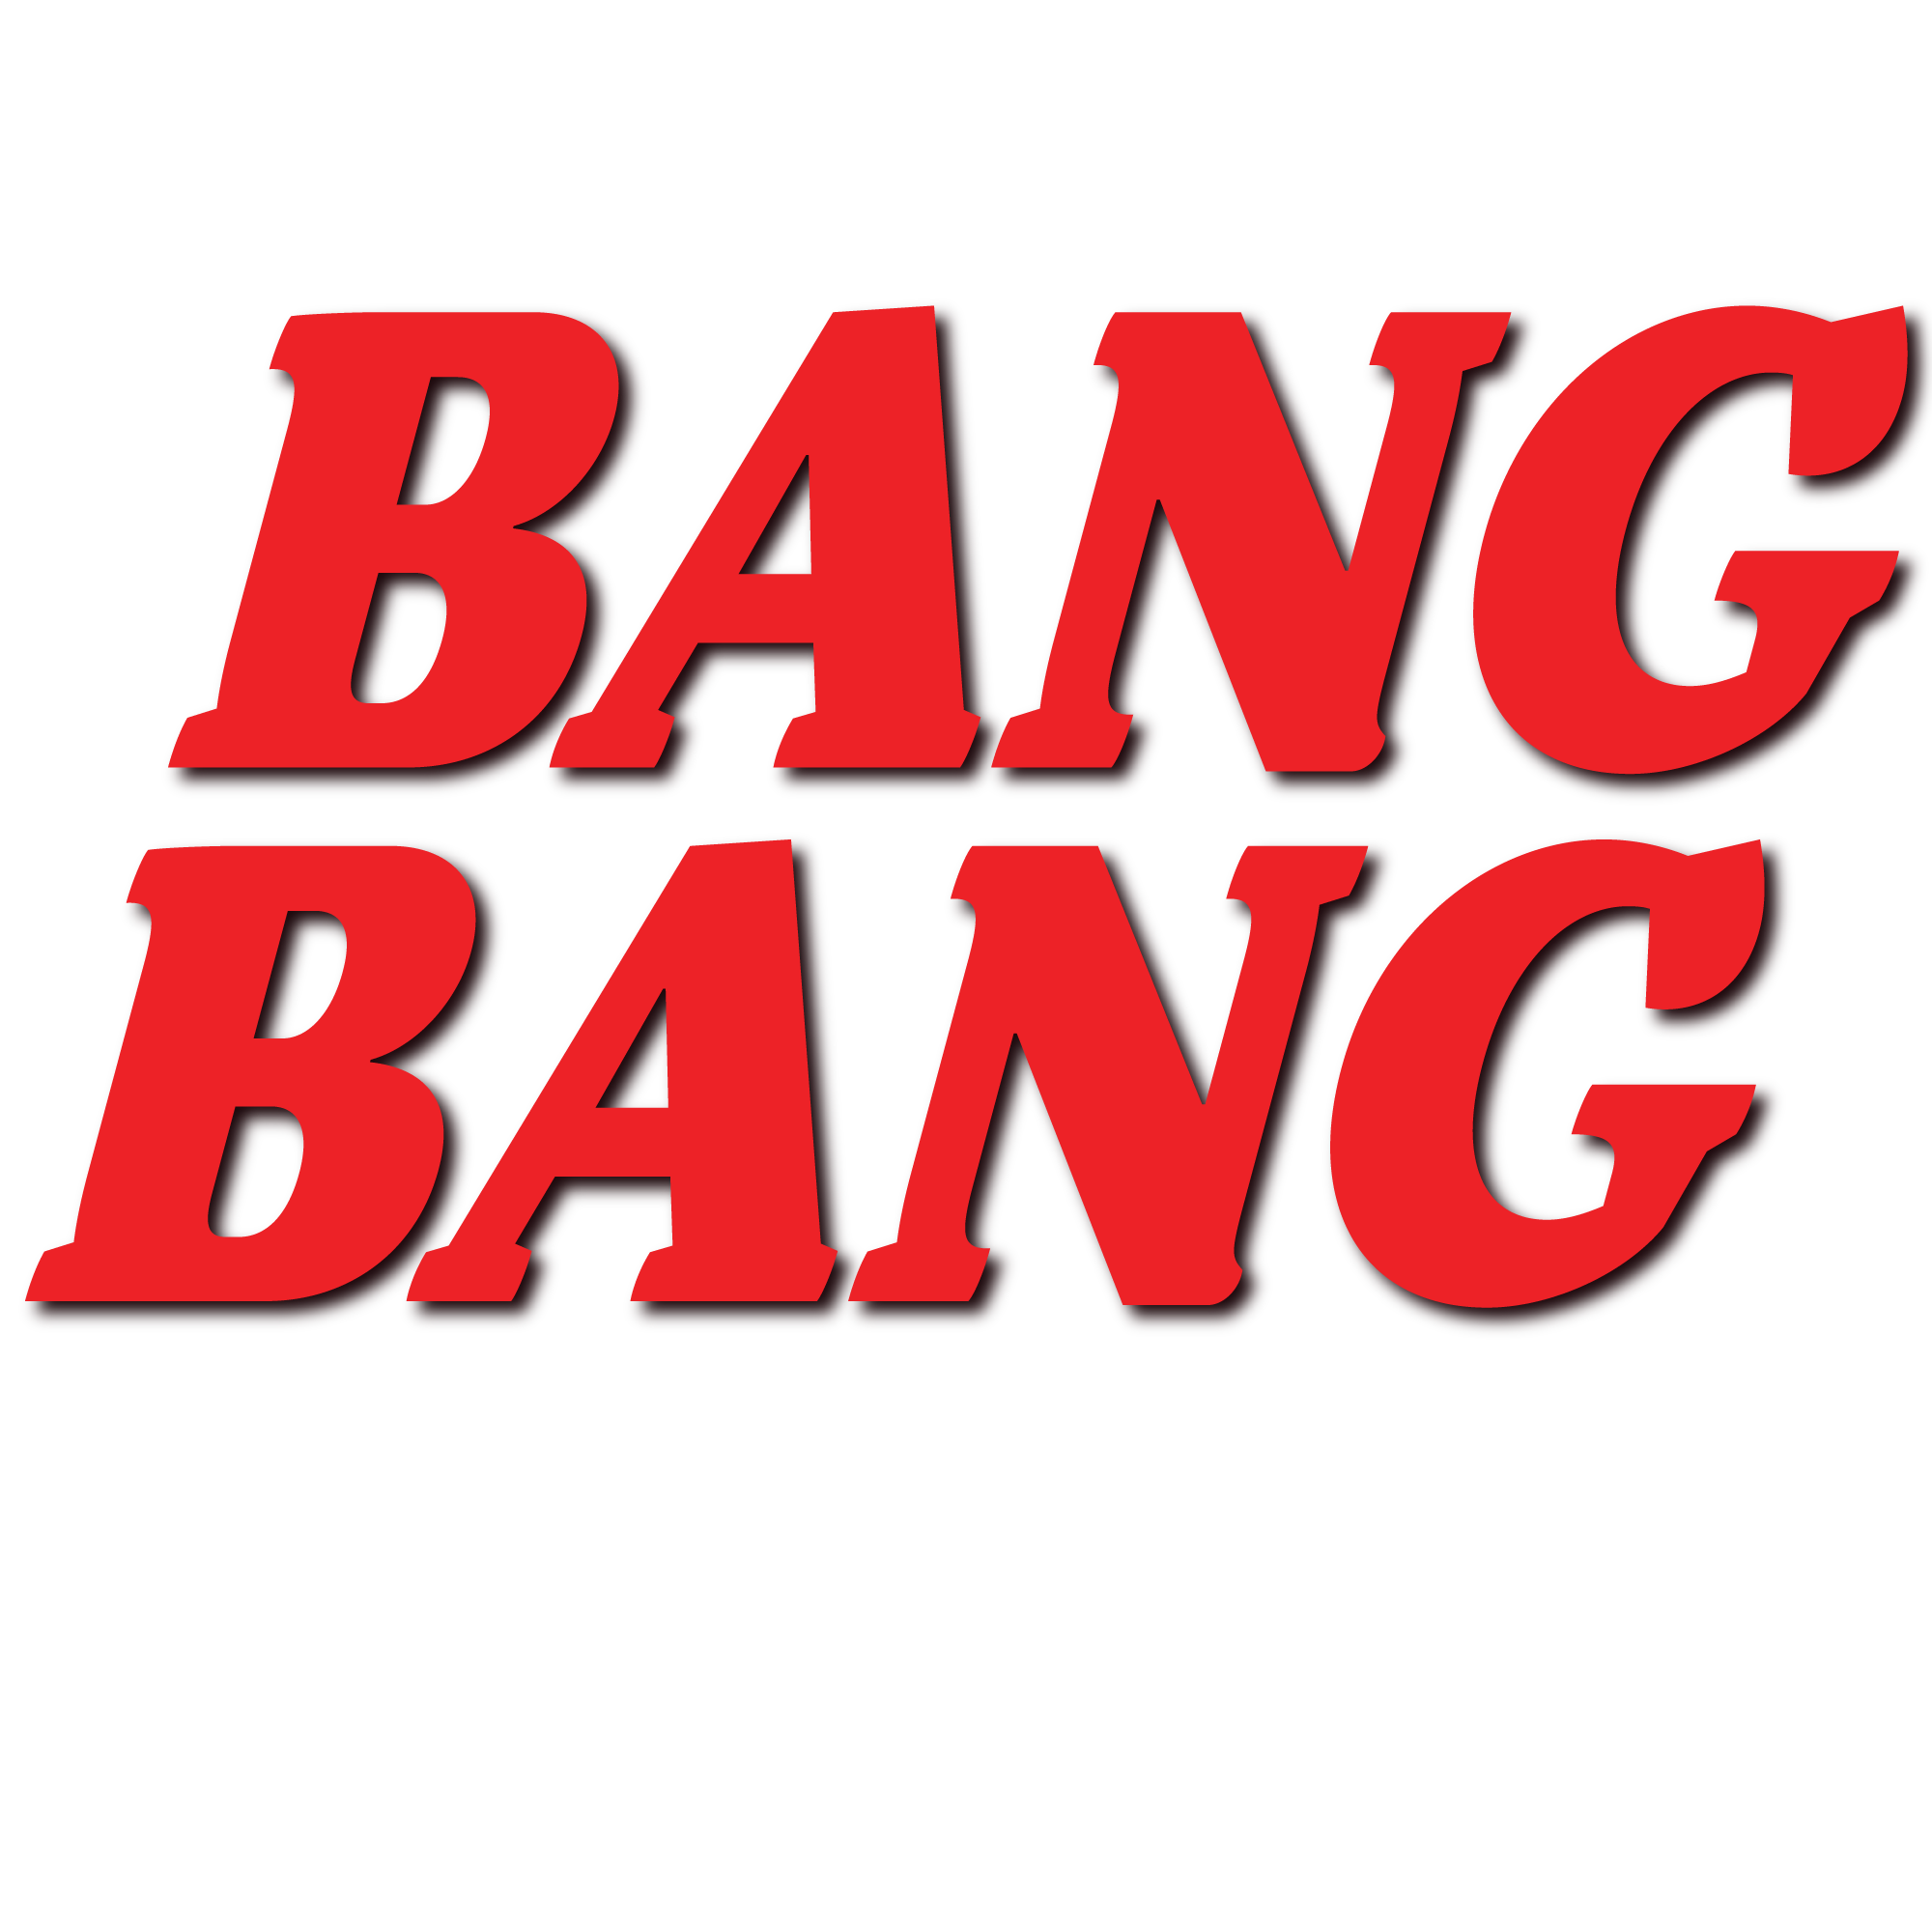 Bang Bang Hair Salon